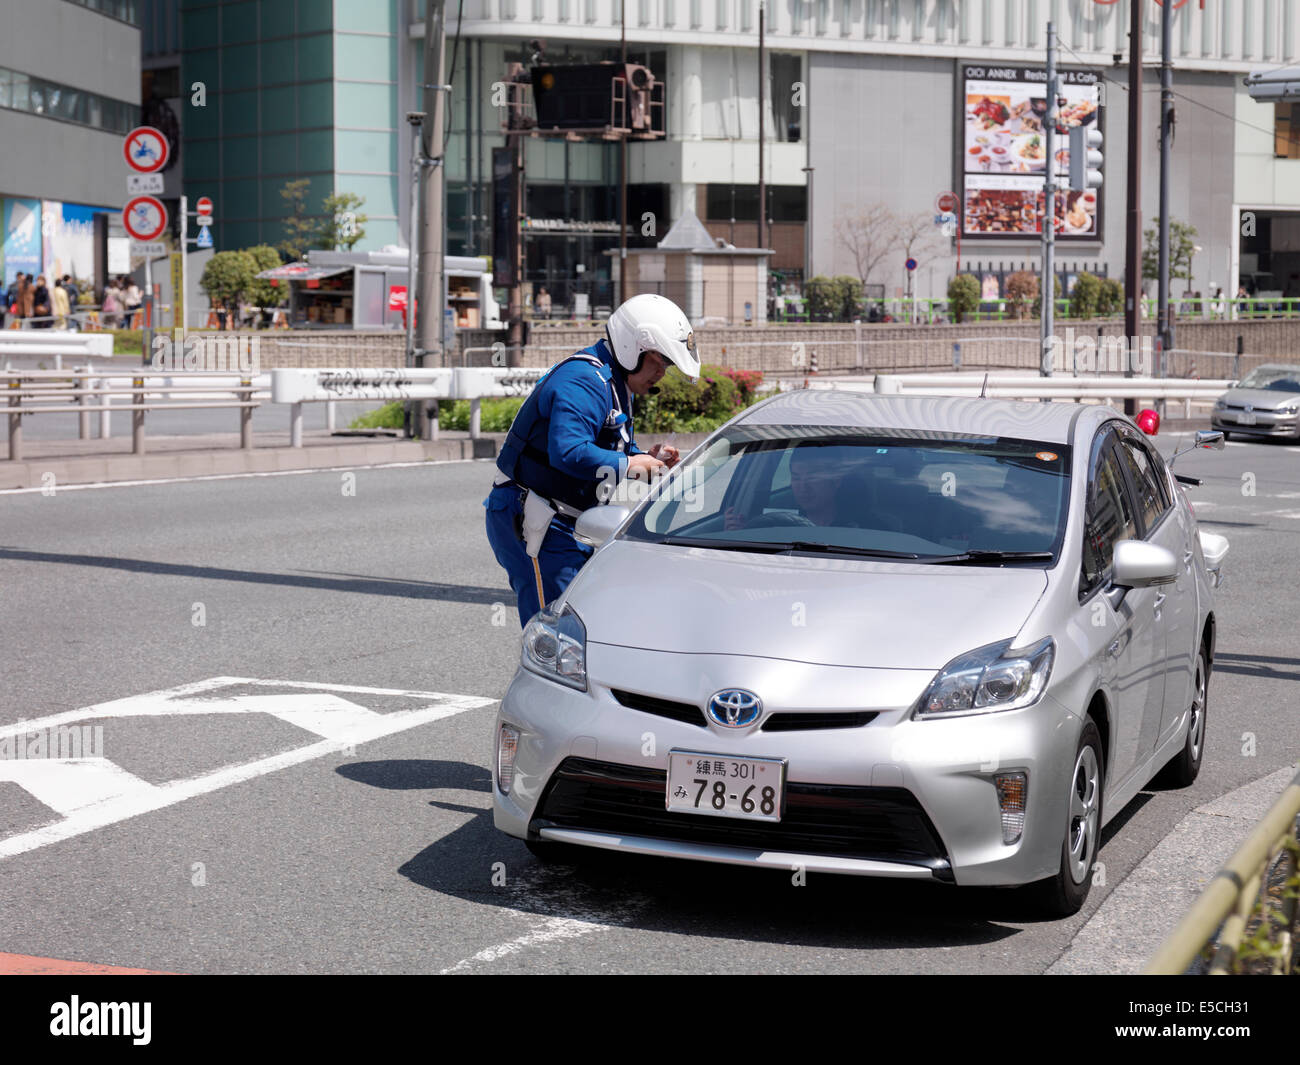 Agent de police contrôle le permis de conduire d'un conducteur dans une voiture est arrêtée. Tokyo, Japon. Banque D'Images